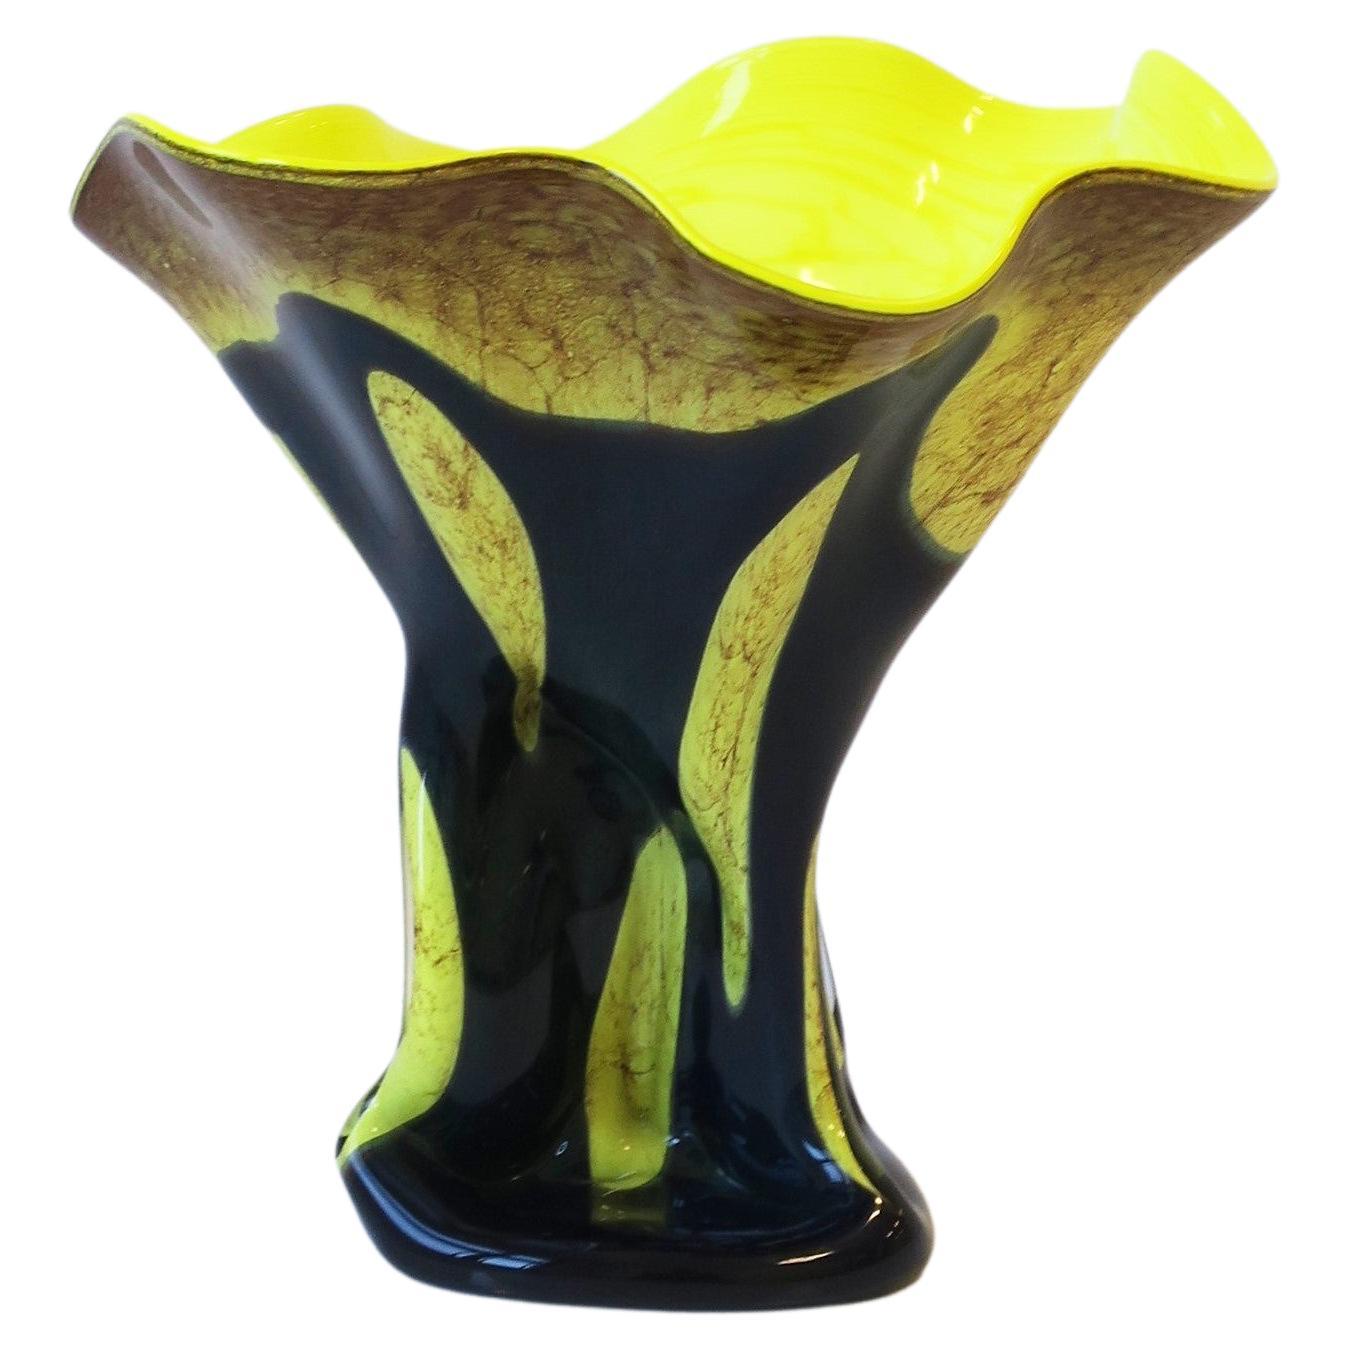 Organic Modern Art Glass Vase Sculpture